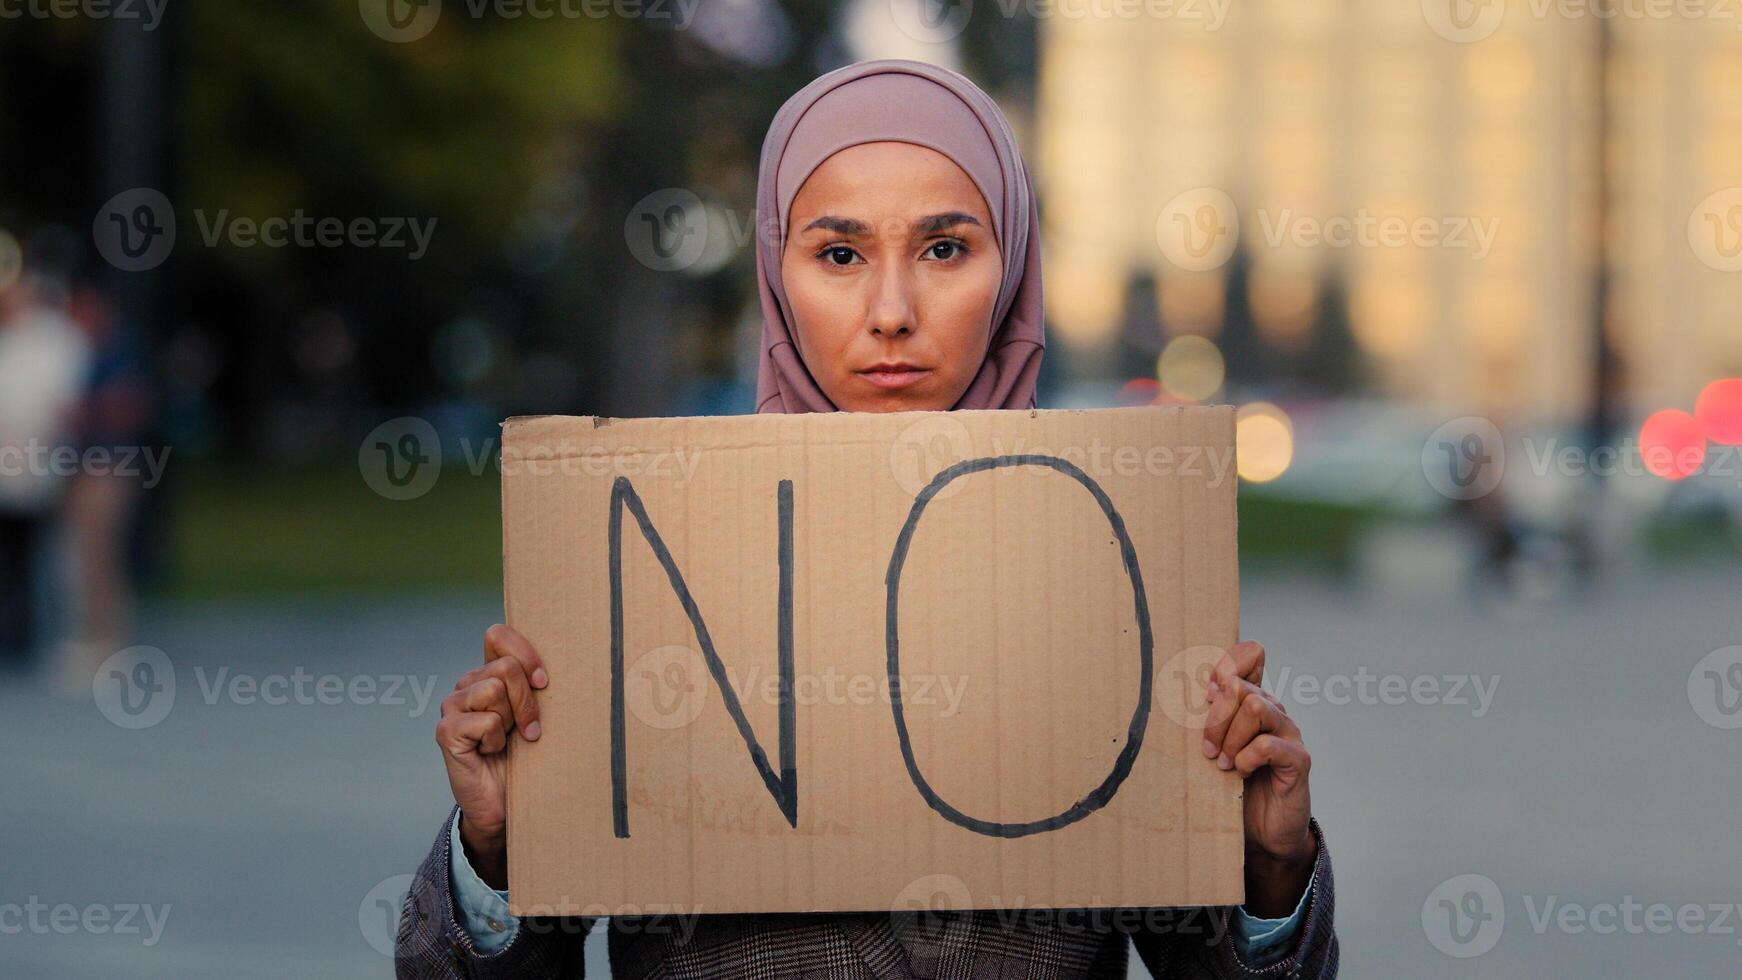 sluta rasism Nej begrepp arab invandrare muslim kvinna i hijab protester mot diskriminering vax vaccination stående i stad. islamic flicka innehav kartong slogan baner med text Nej instämmer inte alls vägran foto